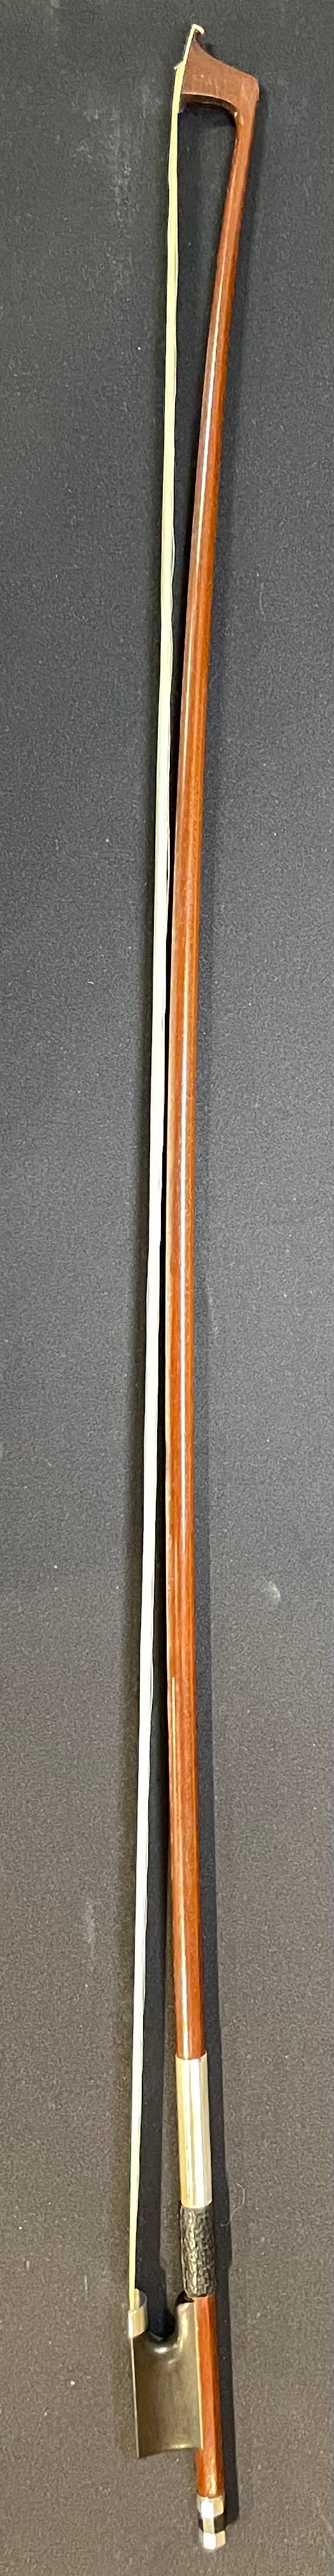 4/4 Violin Bow - Artino Original 2 Star German Wood Model